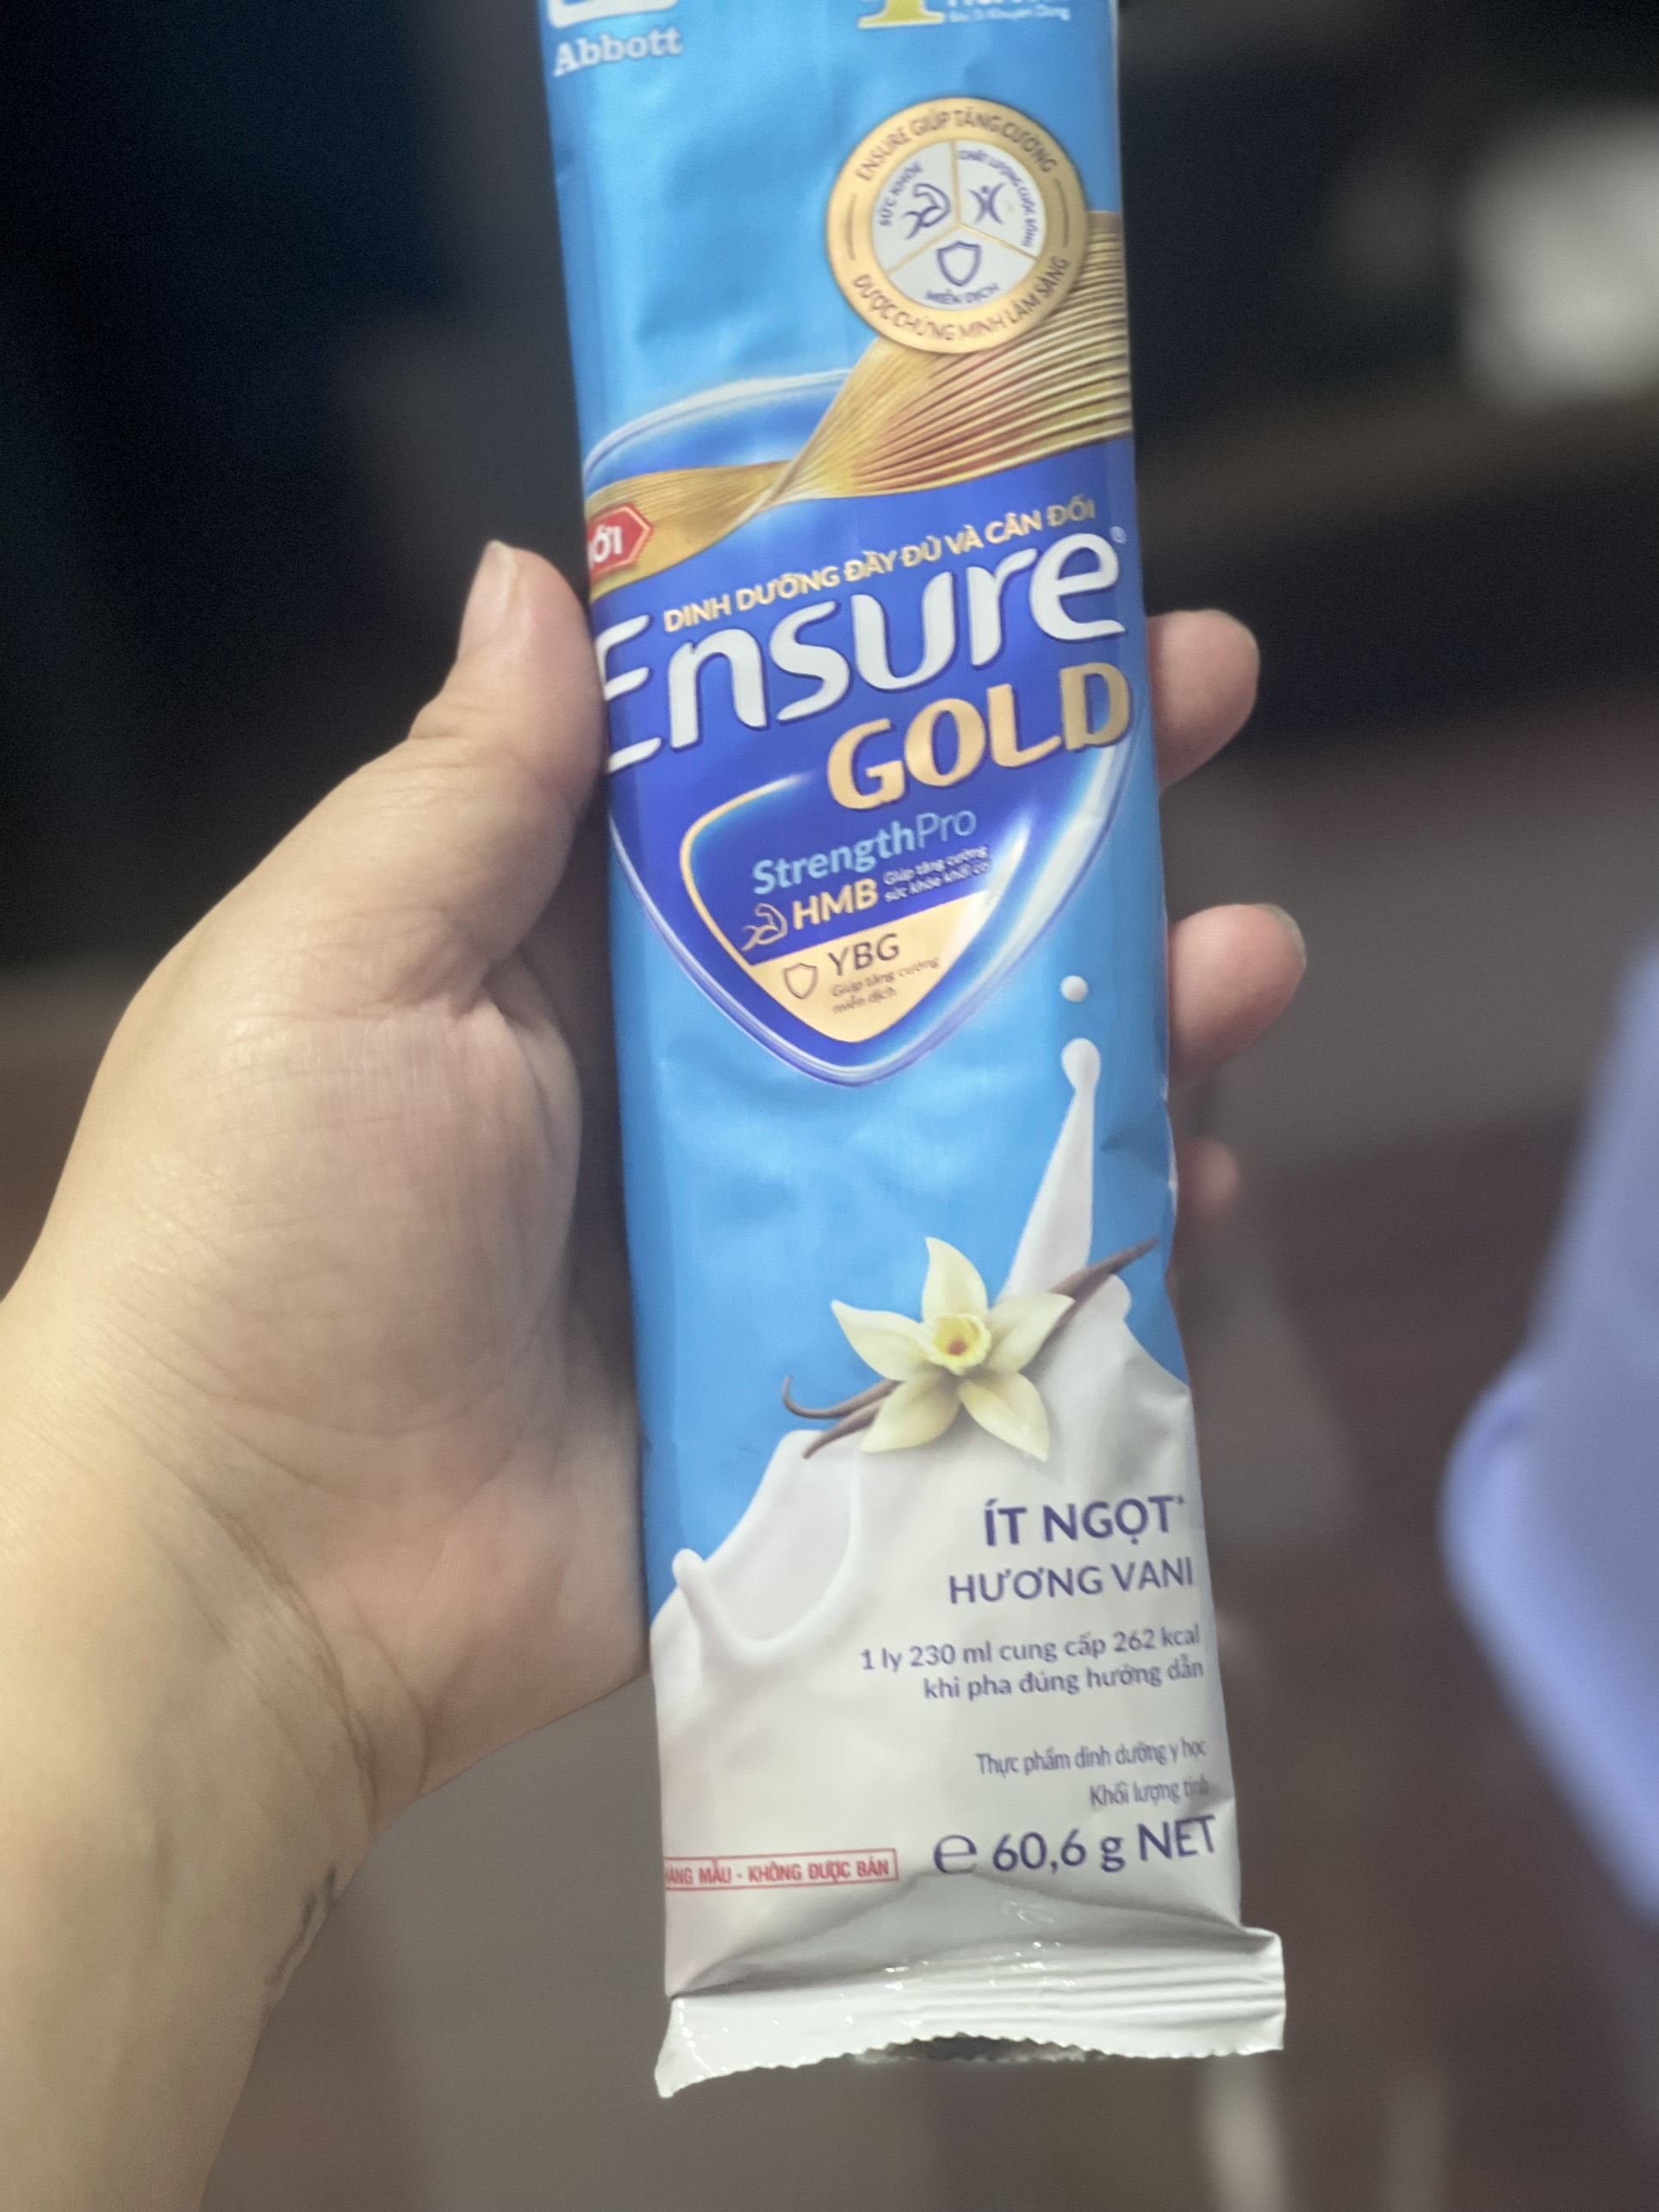 SET 10 GOI MẪU MỚI Sữa gói Ensure gold hương Vani, ít ngọt, cà phê, hạnh